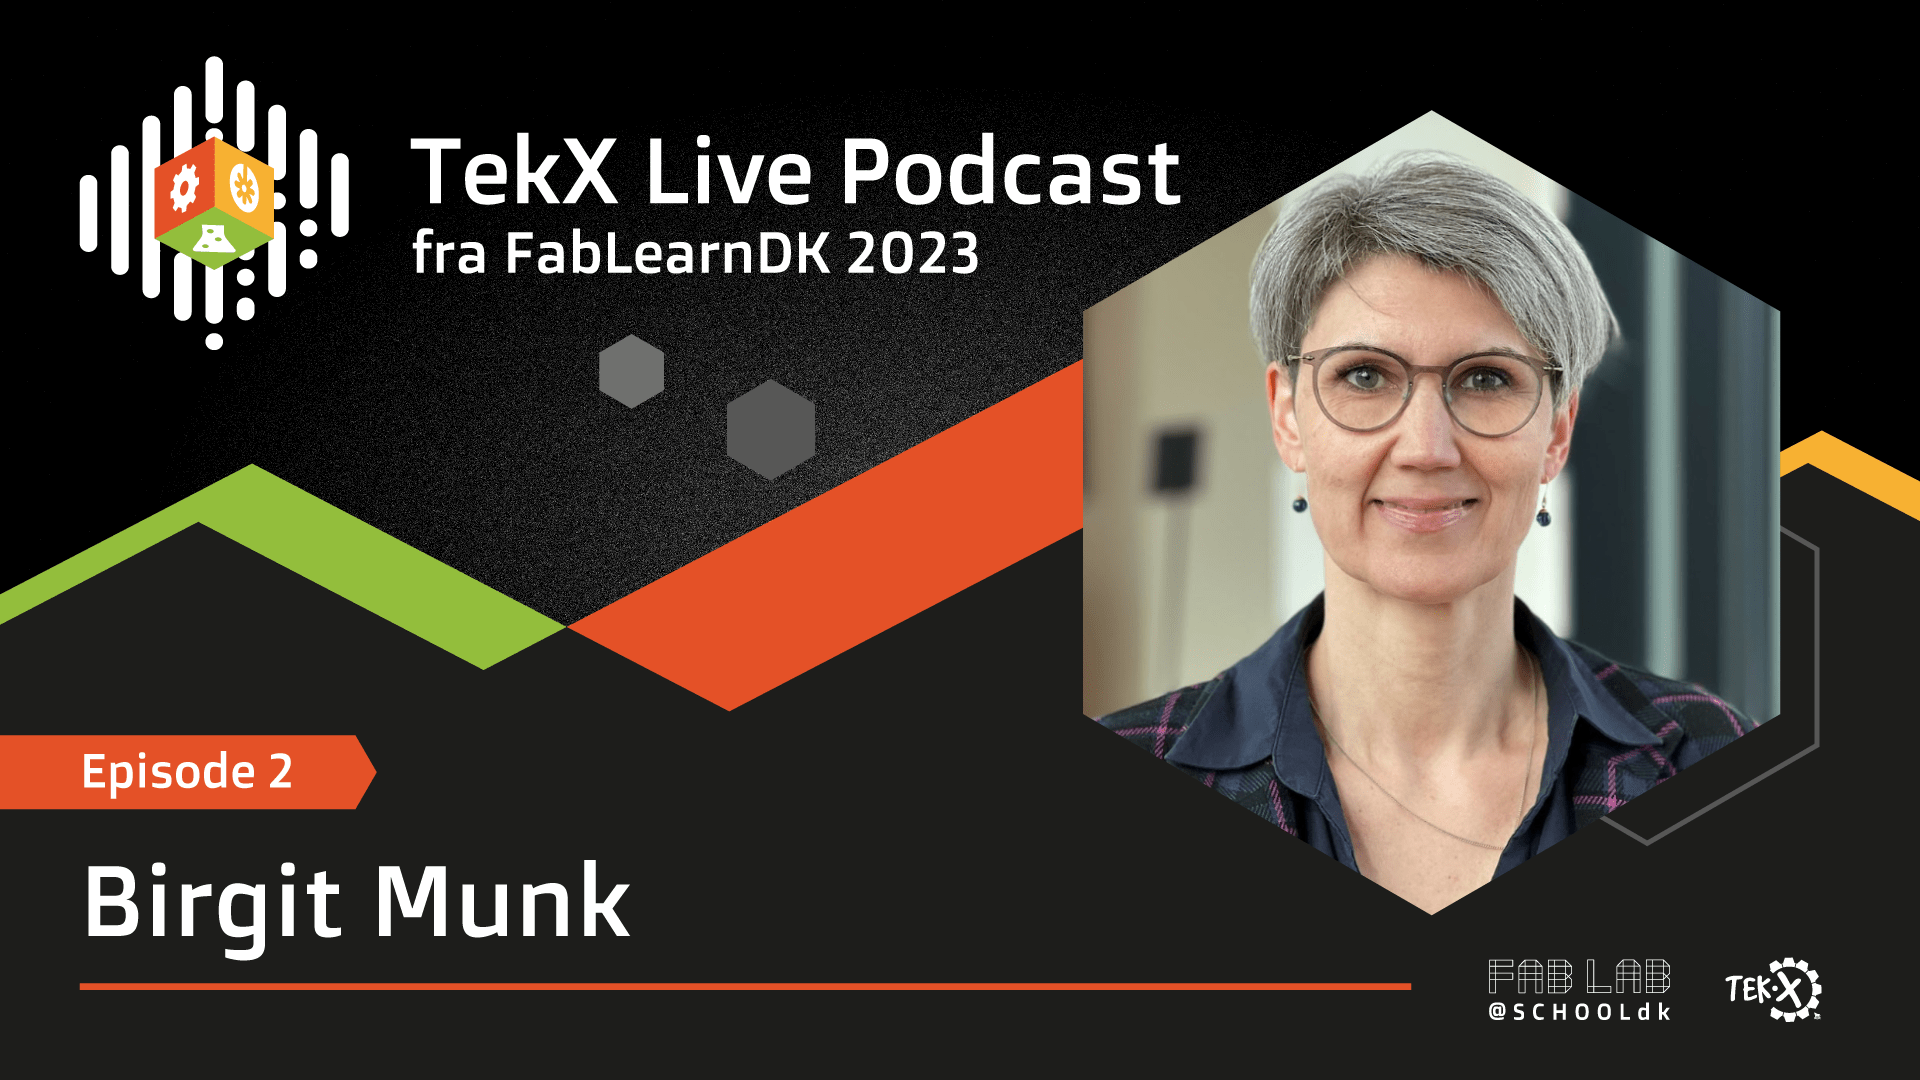 TekX Live fra FablearnDK 2023 - Ep.2 med Birgit Munk